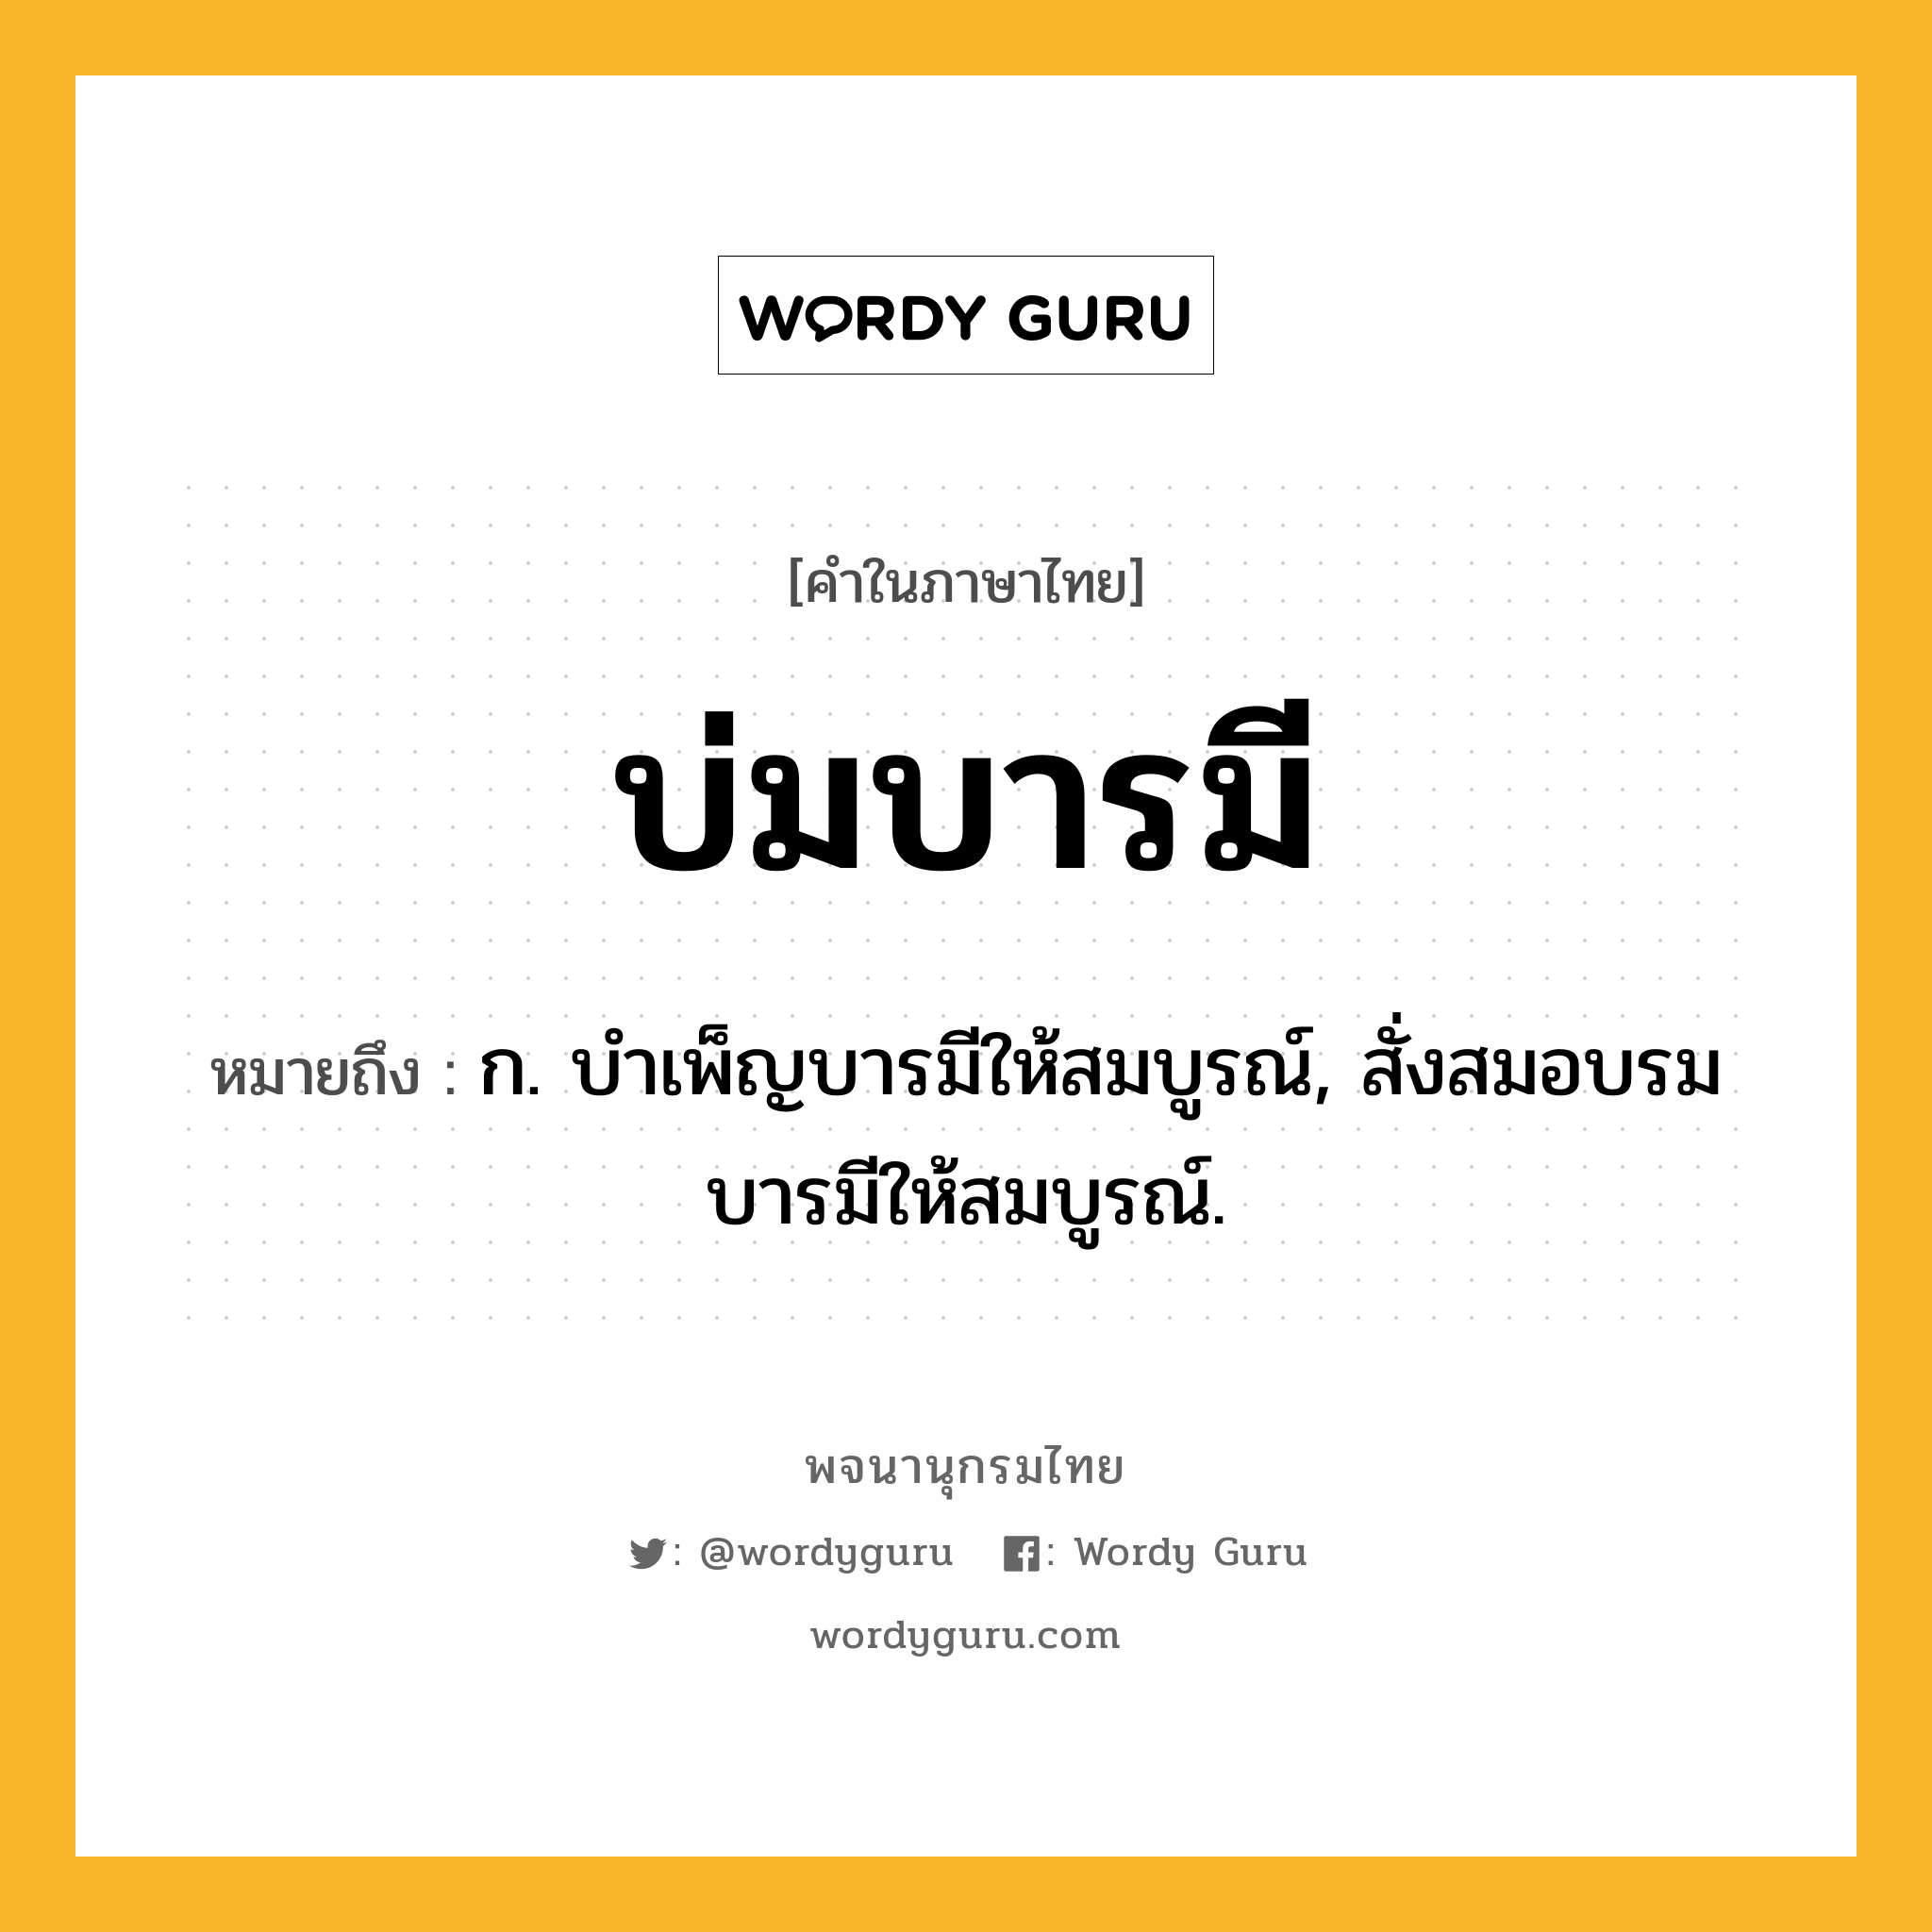 บ่มบารมี หมายถึงอะไร?, คำในภาษาไทย บ่มบารมี หมายถึง ก. บำเพ็ญบารมีให้สมบูรณ์, สั่งสมอบรมบารมีให้สมบูรณ์.